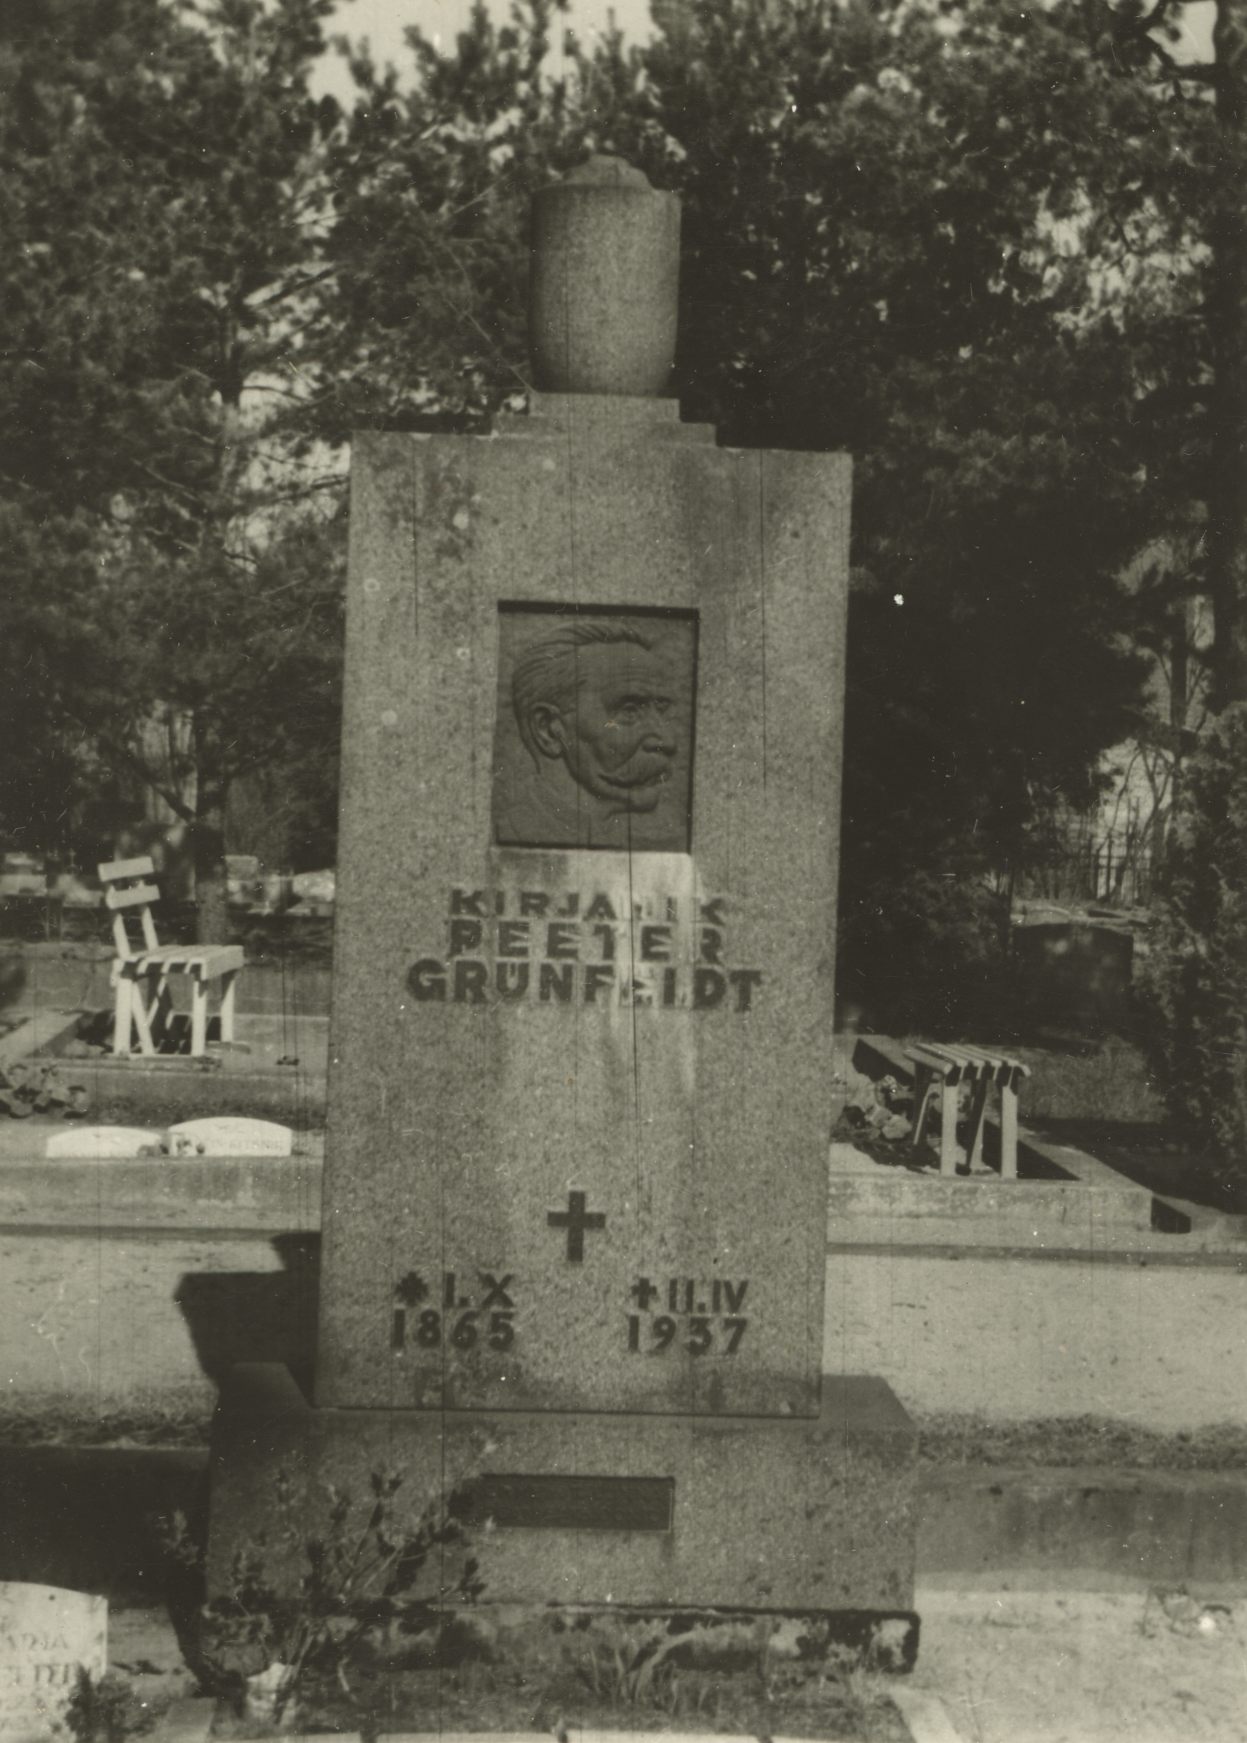 Peeter Grünfelt's grave